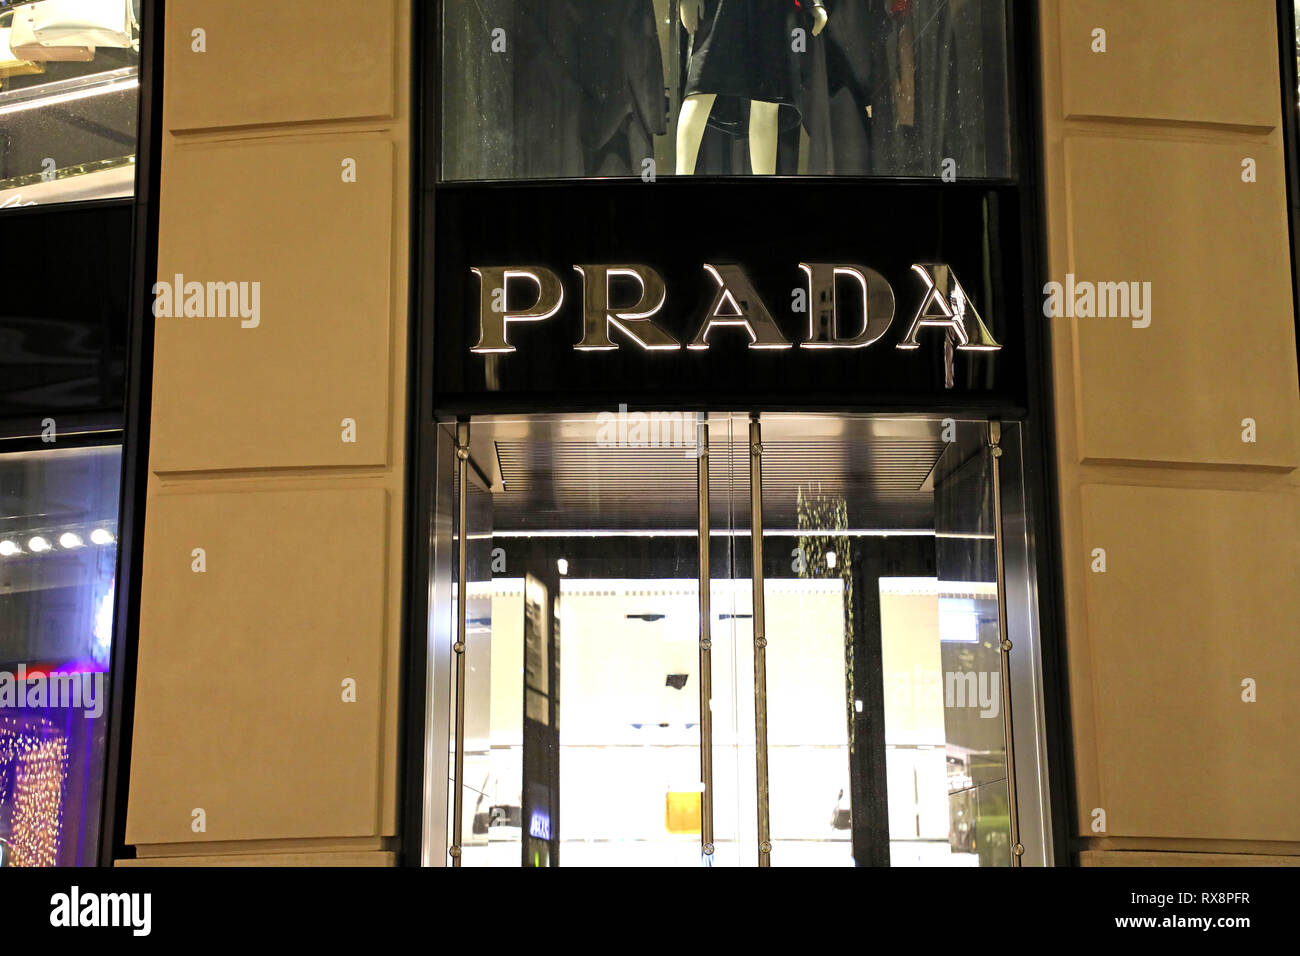 VIENNA, AUSTRIA - JANUARY 8, 2019: night view of  Prada store in Vienna, Austria Stock Photo